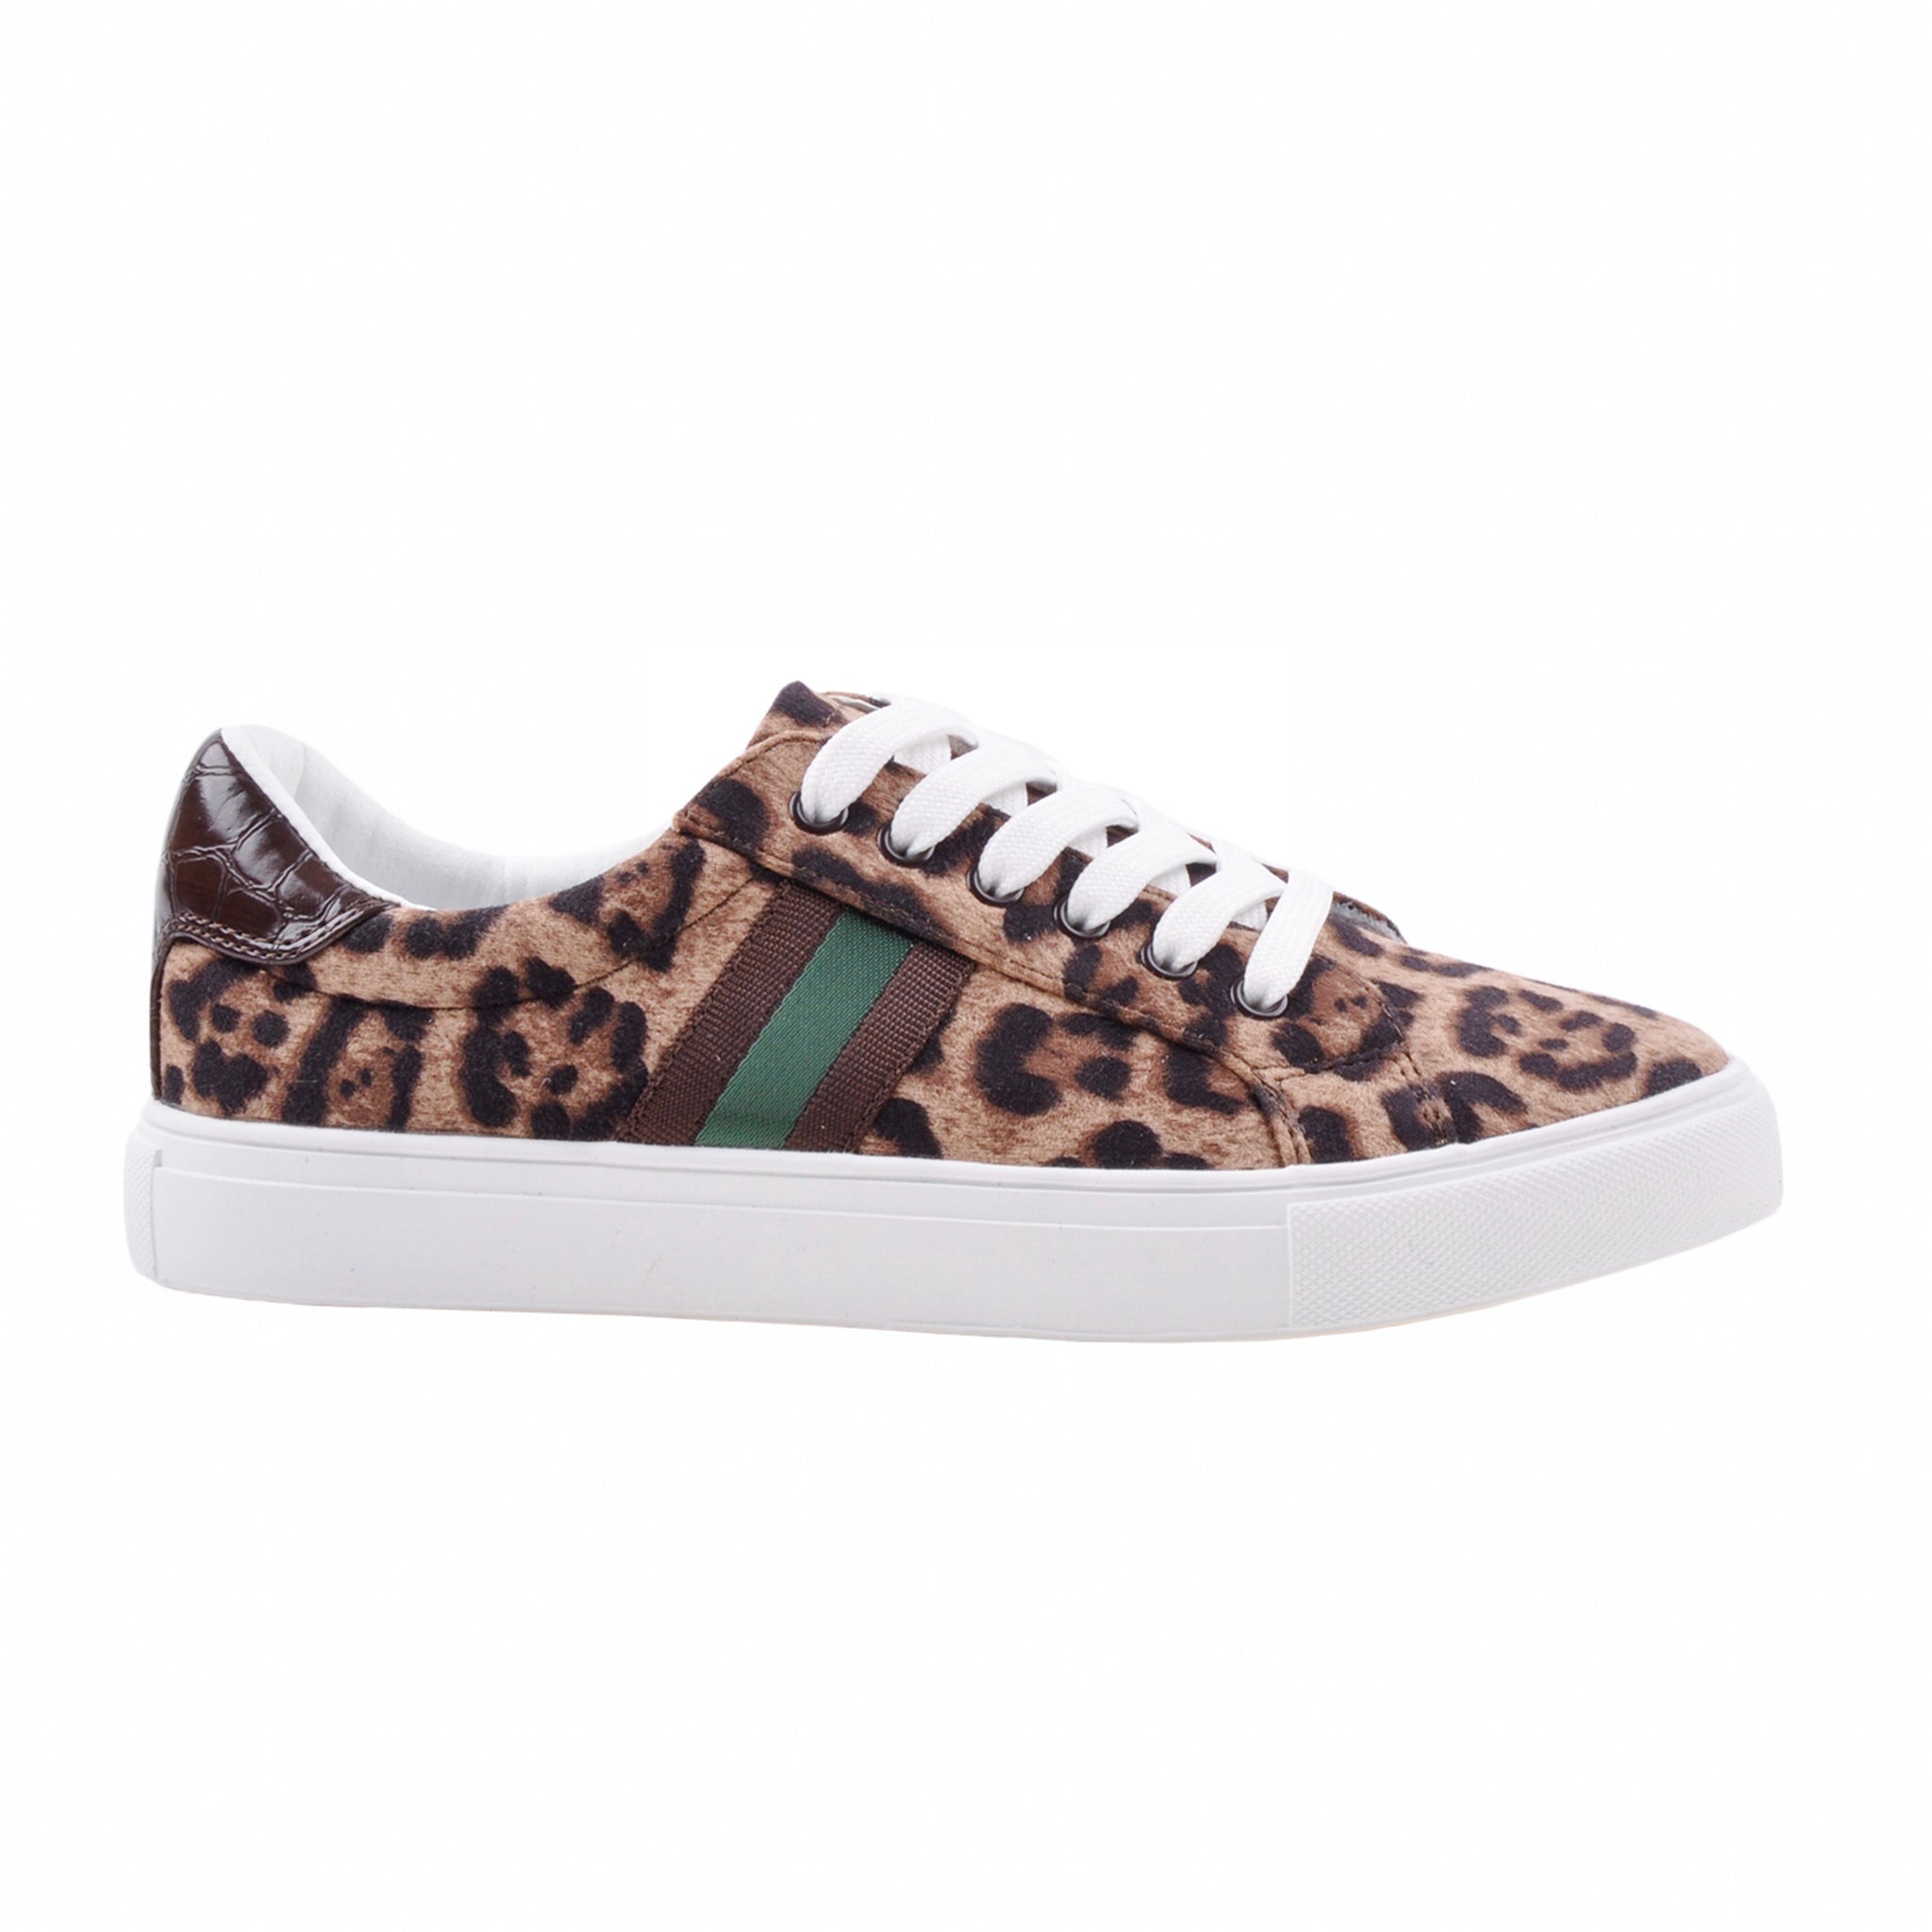 Sofie Schnoor - Sneakers, Tora - Leopard